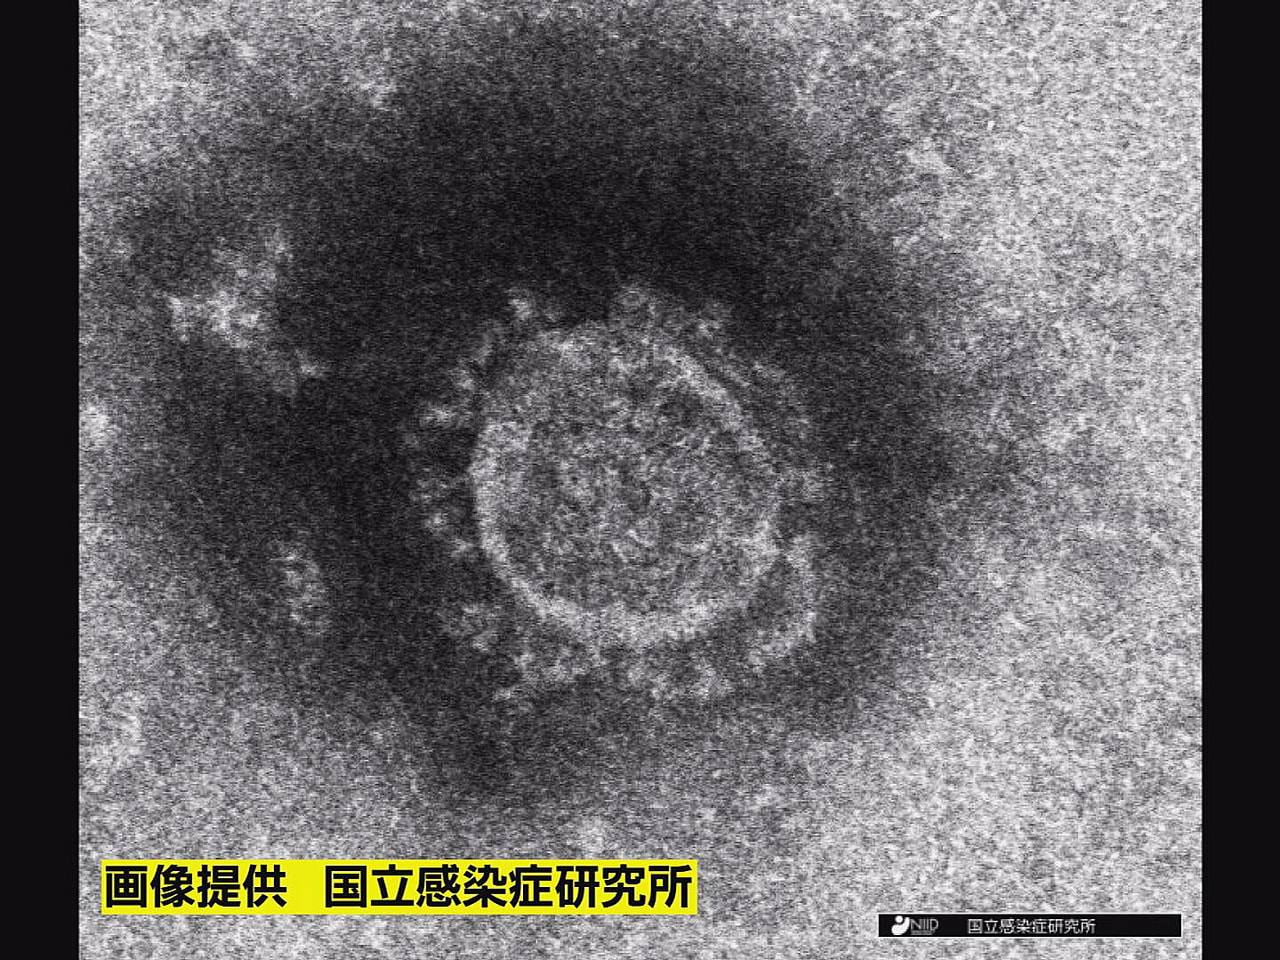 岐阜県は１３日、新型コロナウイルスの新たな感染者は確認されなかったと発表しました...